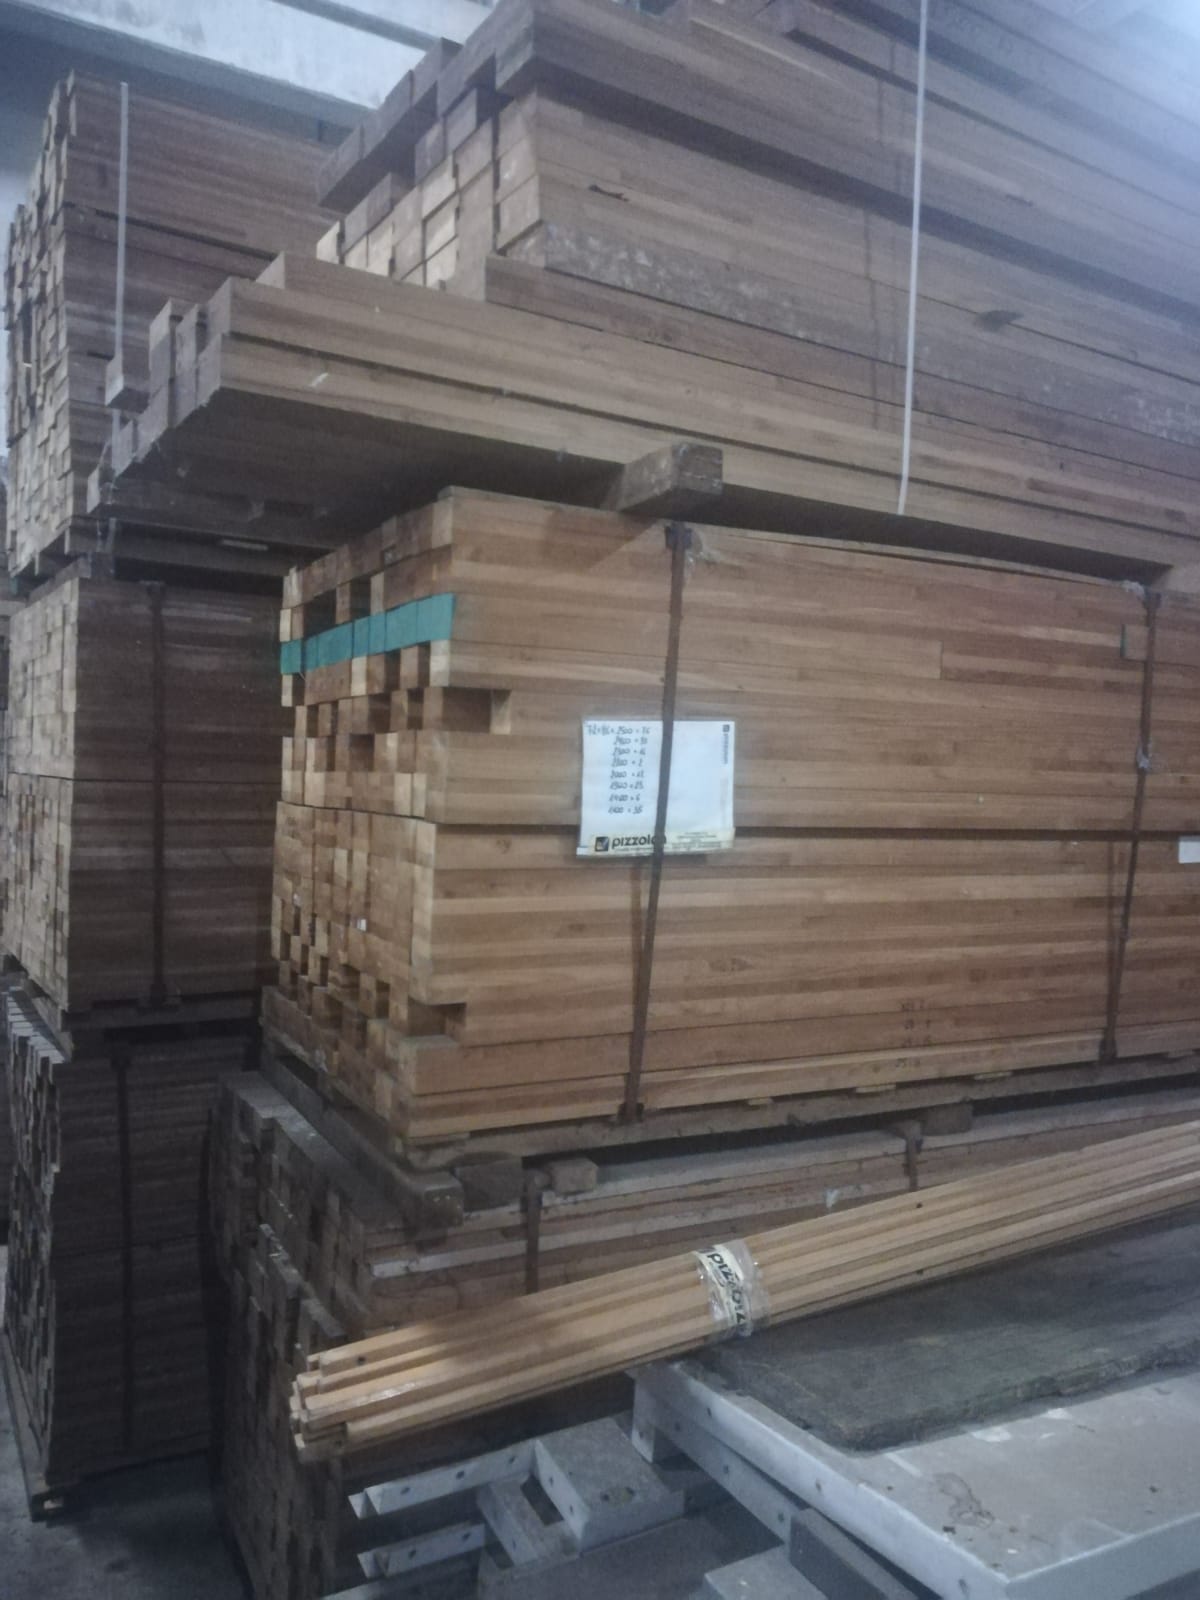 9008 wood europe jan 21 19 